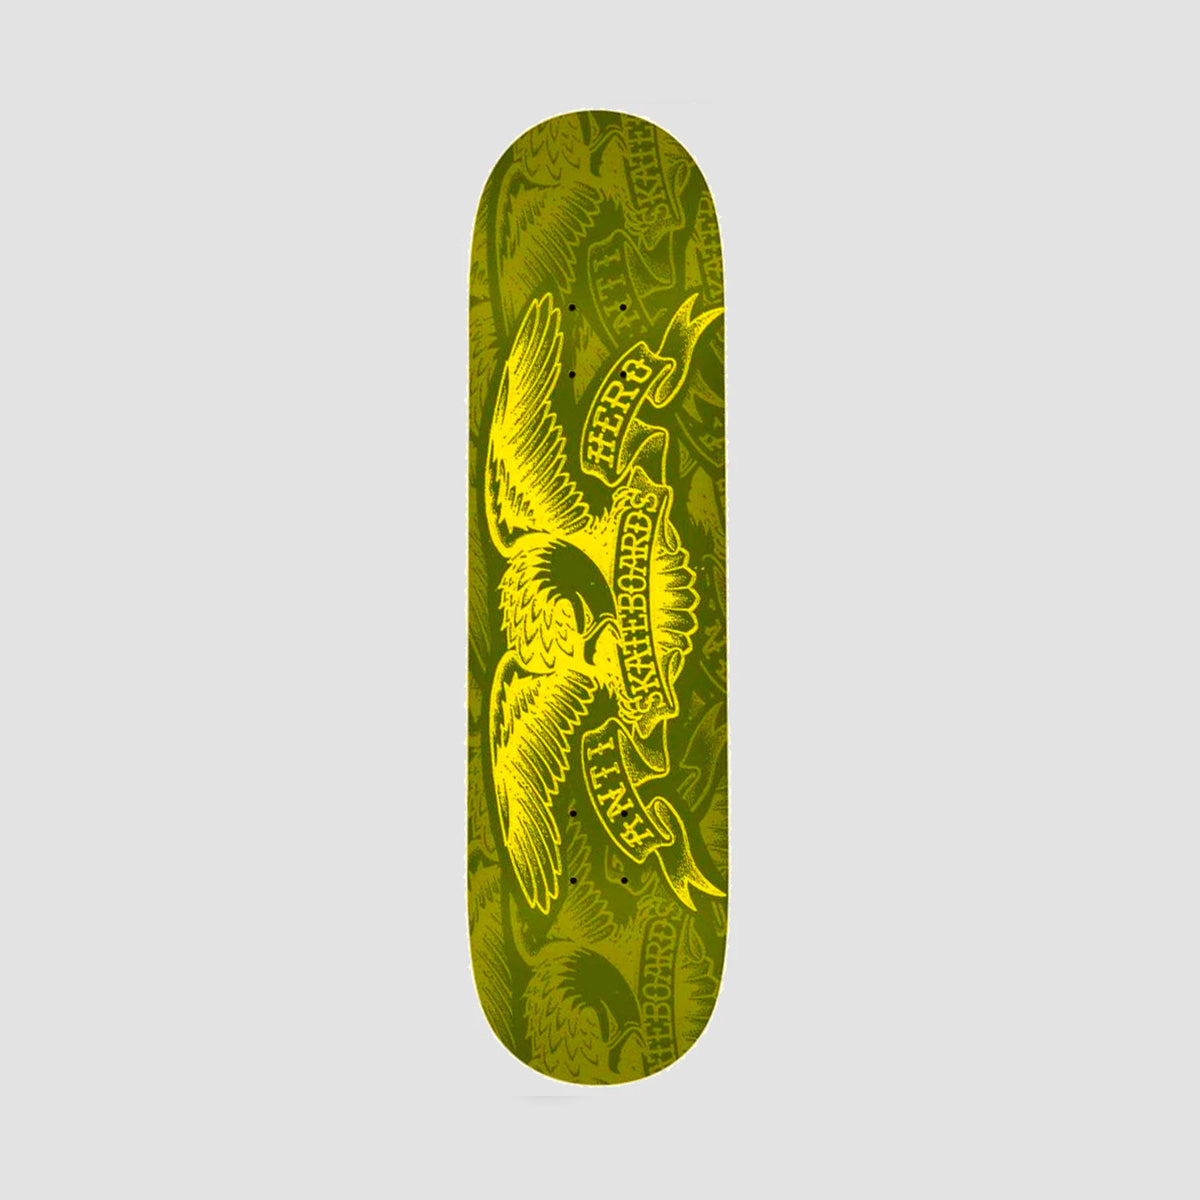 Antihero Copier Eagle Skateboard Deck Olive - 7.75"